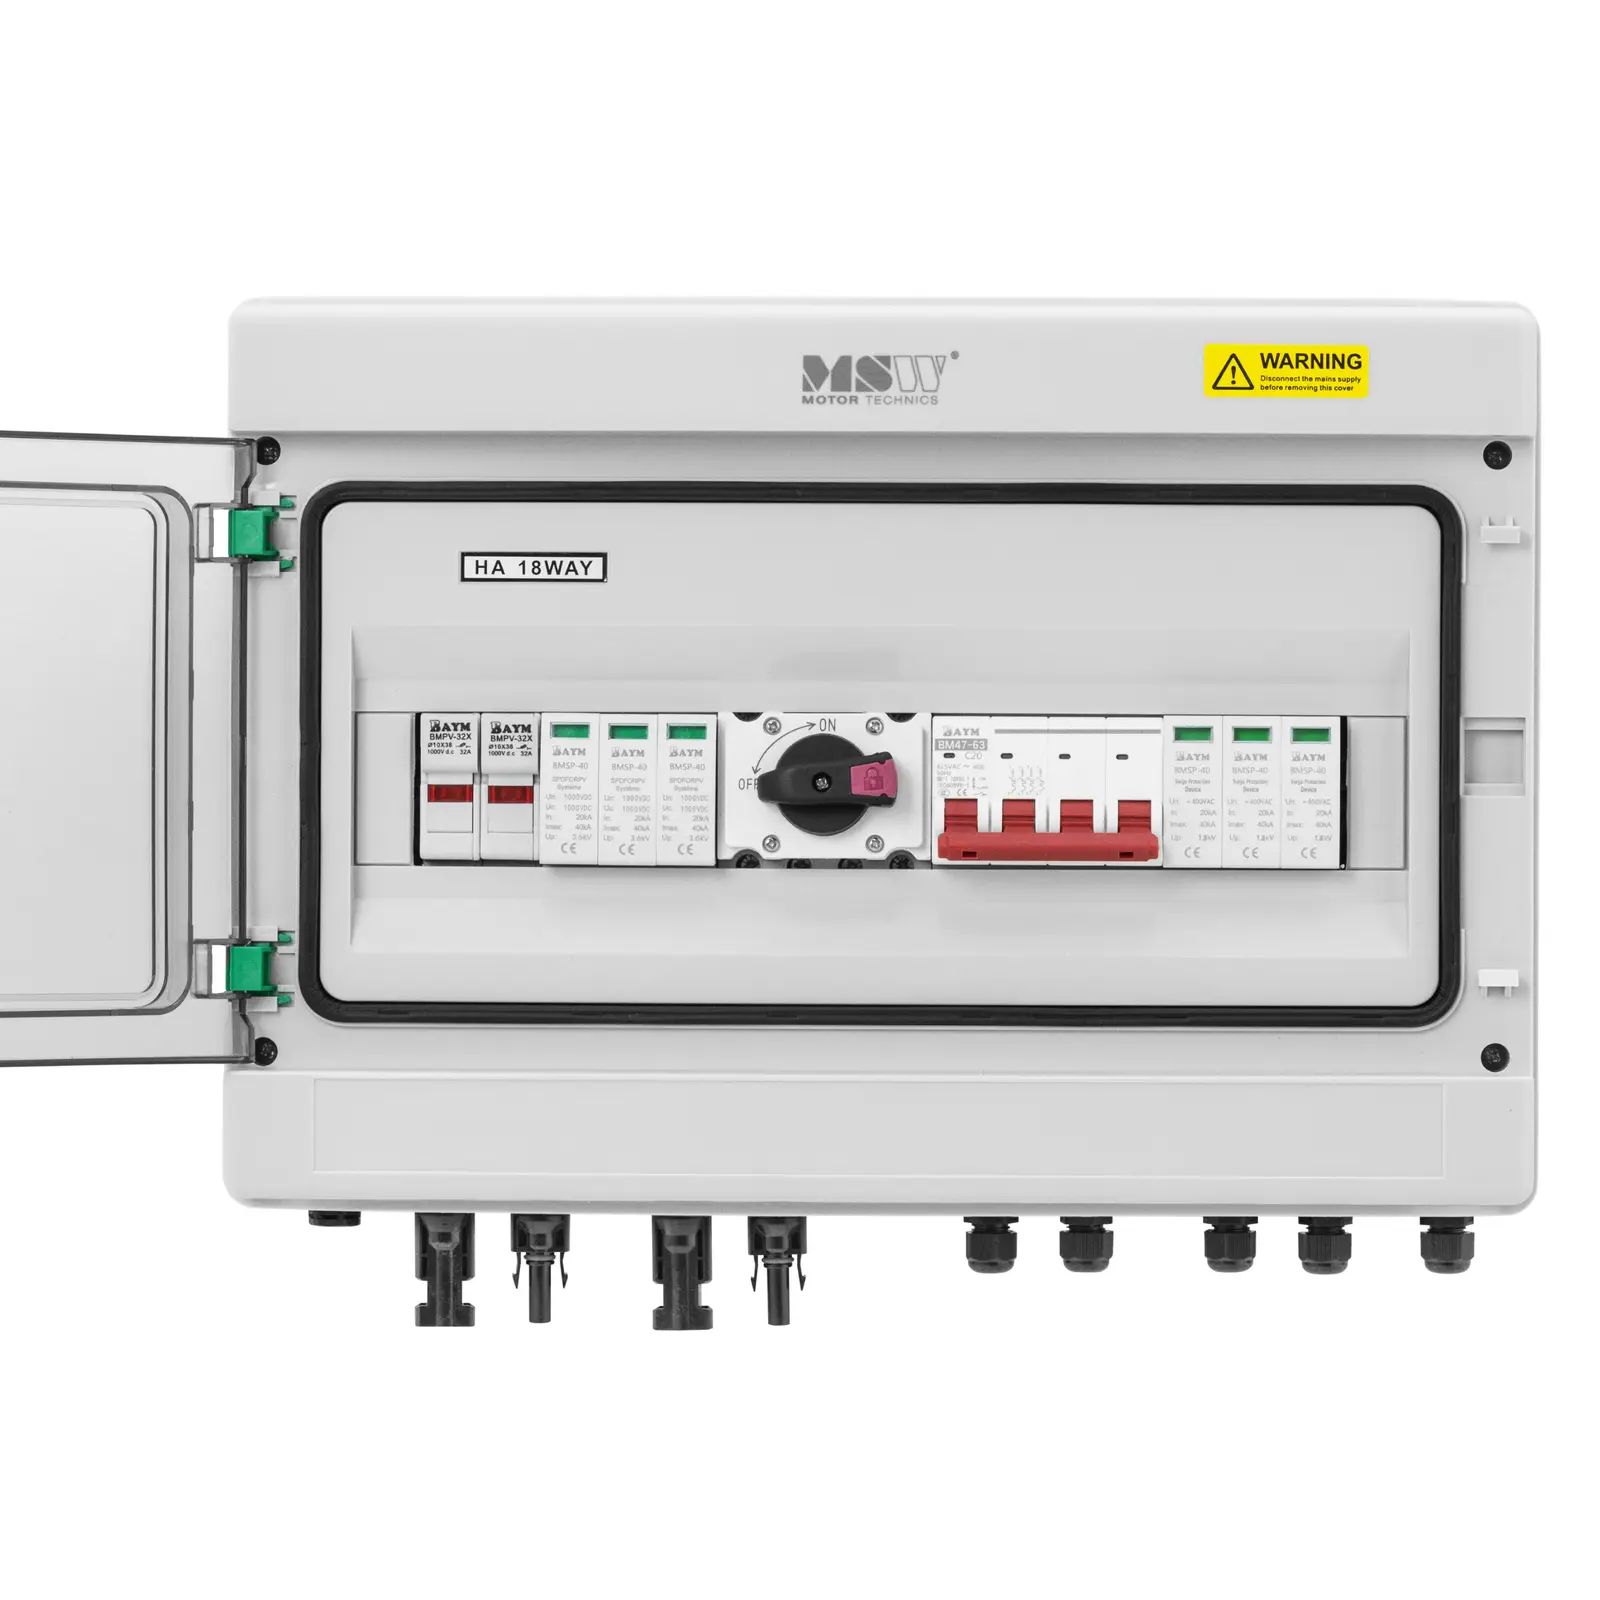 Caixa de derivação com proteção contra sobretensão para sistema fotovoltaico - tipo 2 - 2 entradas / 2 saídas - 1000 V - IP65